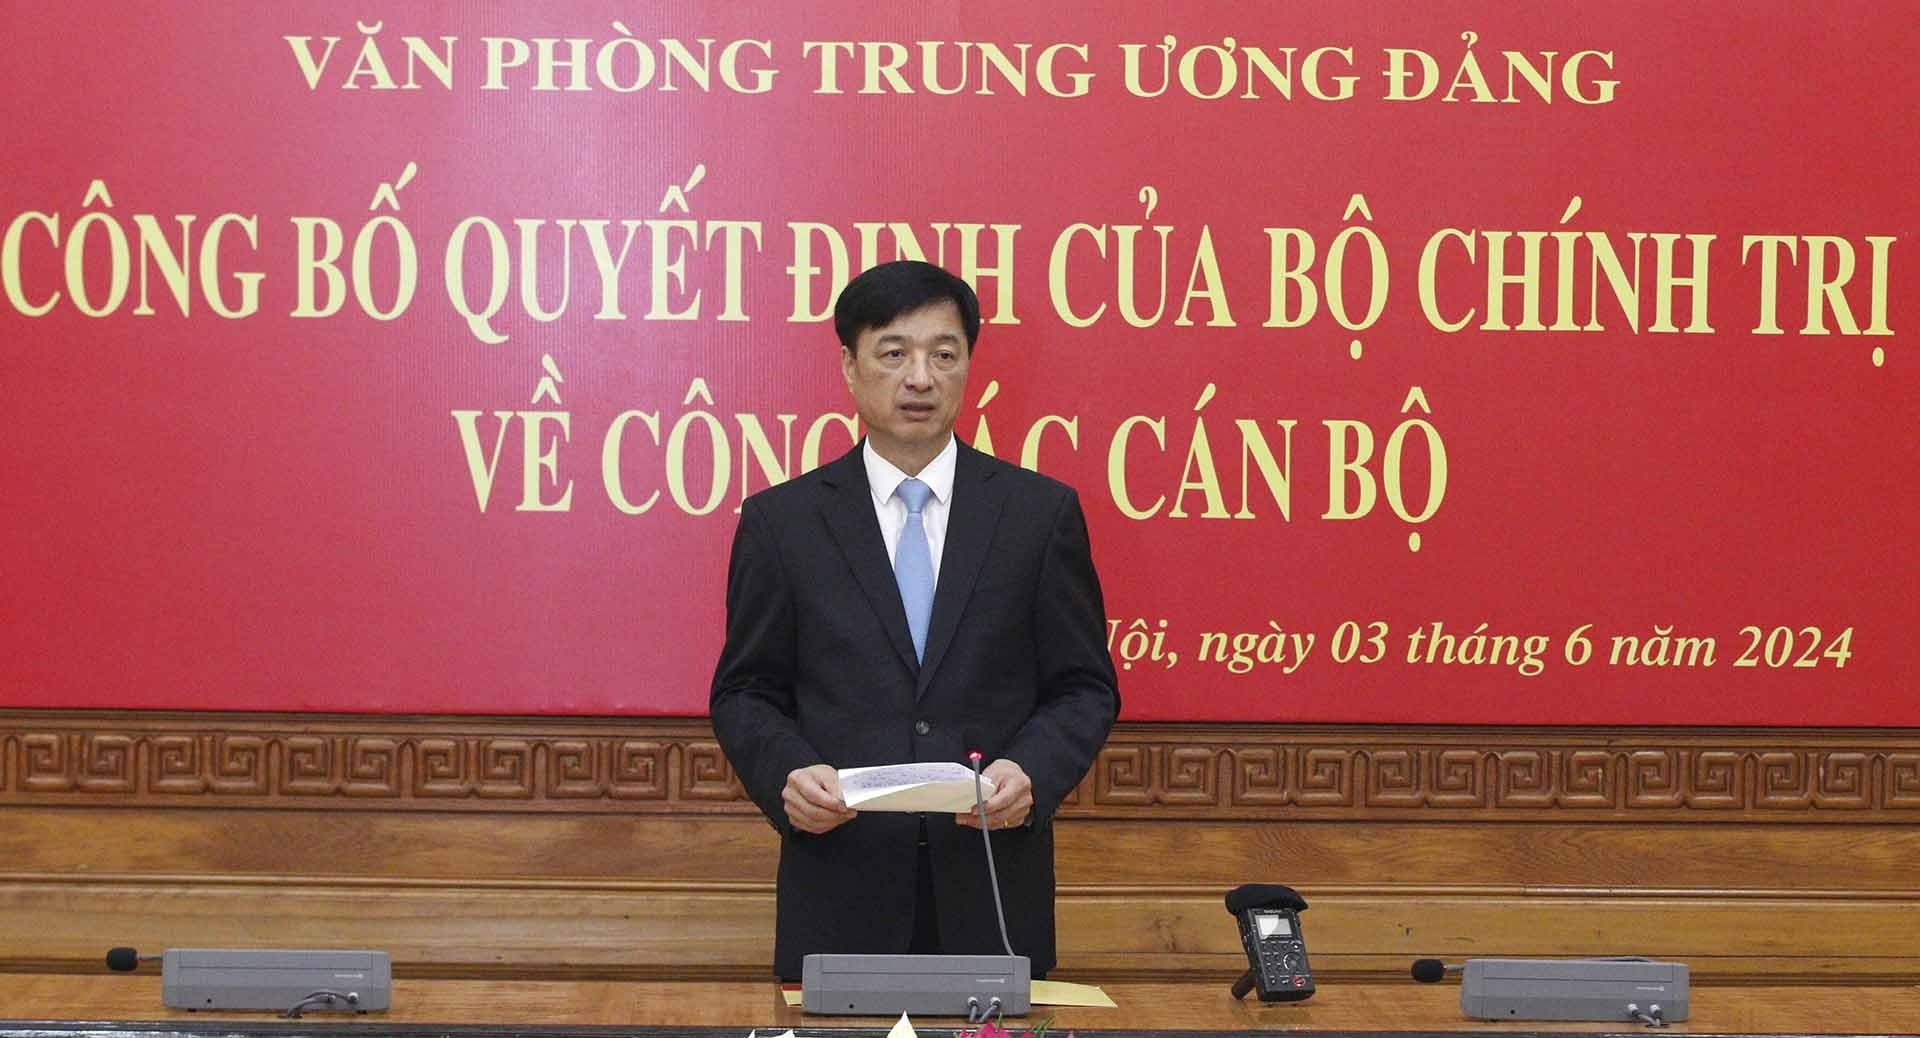 Công bố Quyết định của Bộ Chính trị điều động, phân công đồng chí Nguyễn Duy Ngọc giữ chức Chánh Văn phòng Trung ương Đảng